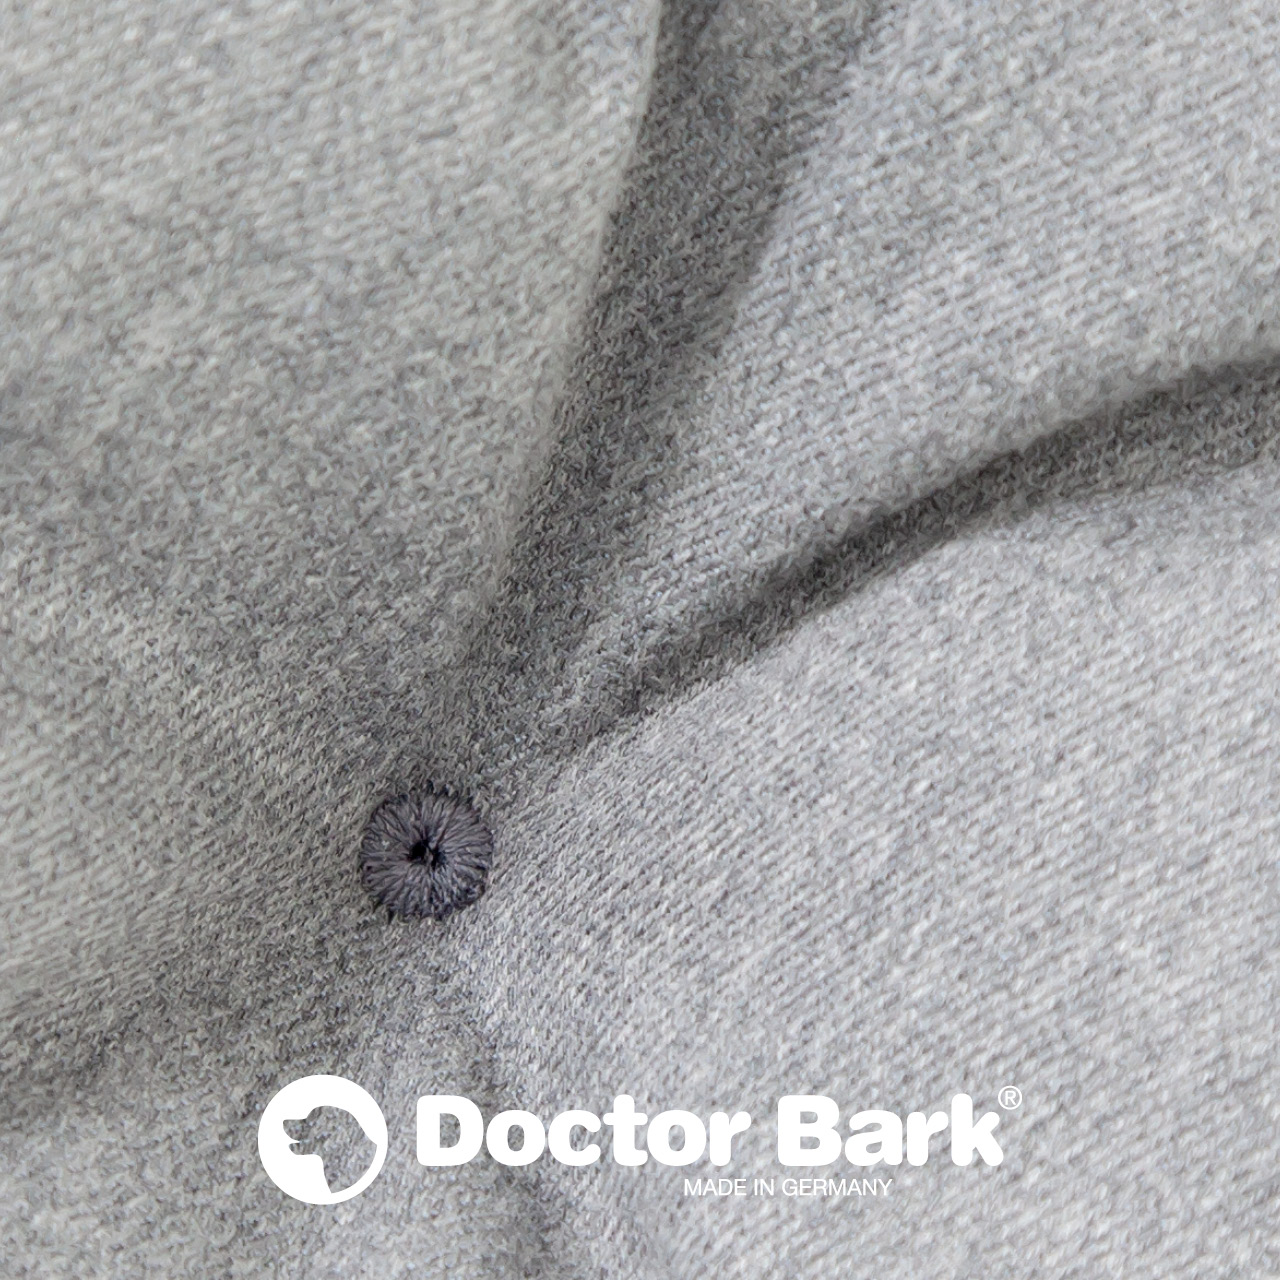 orthopädisches Einlegekissen für Doctor Bark Hundebett - hellgrau